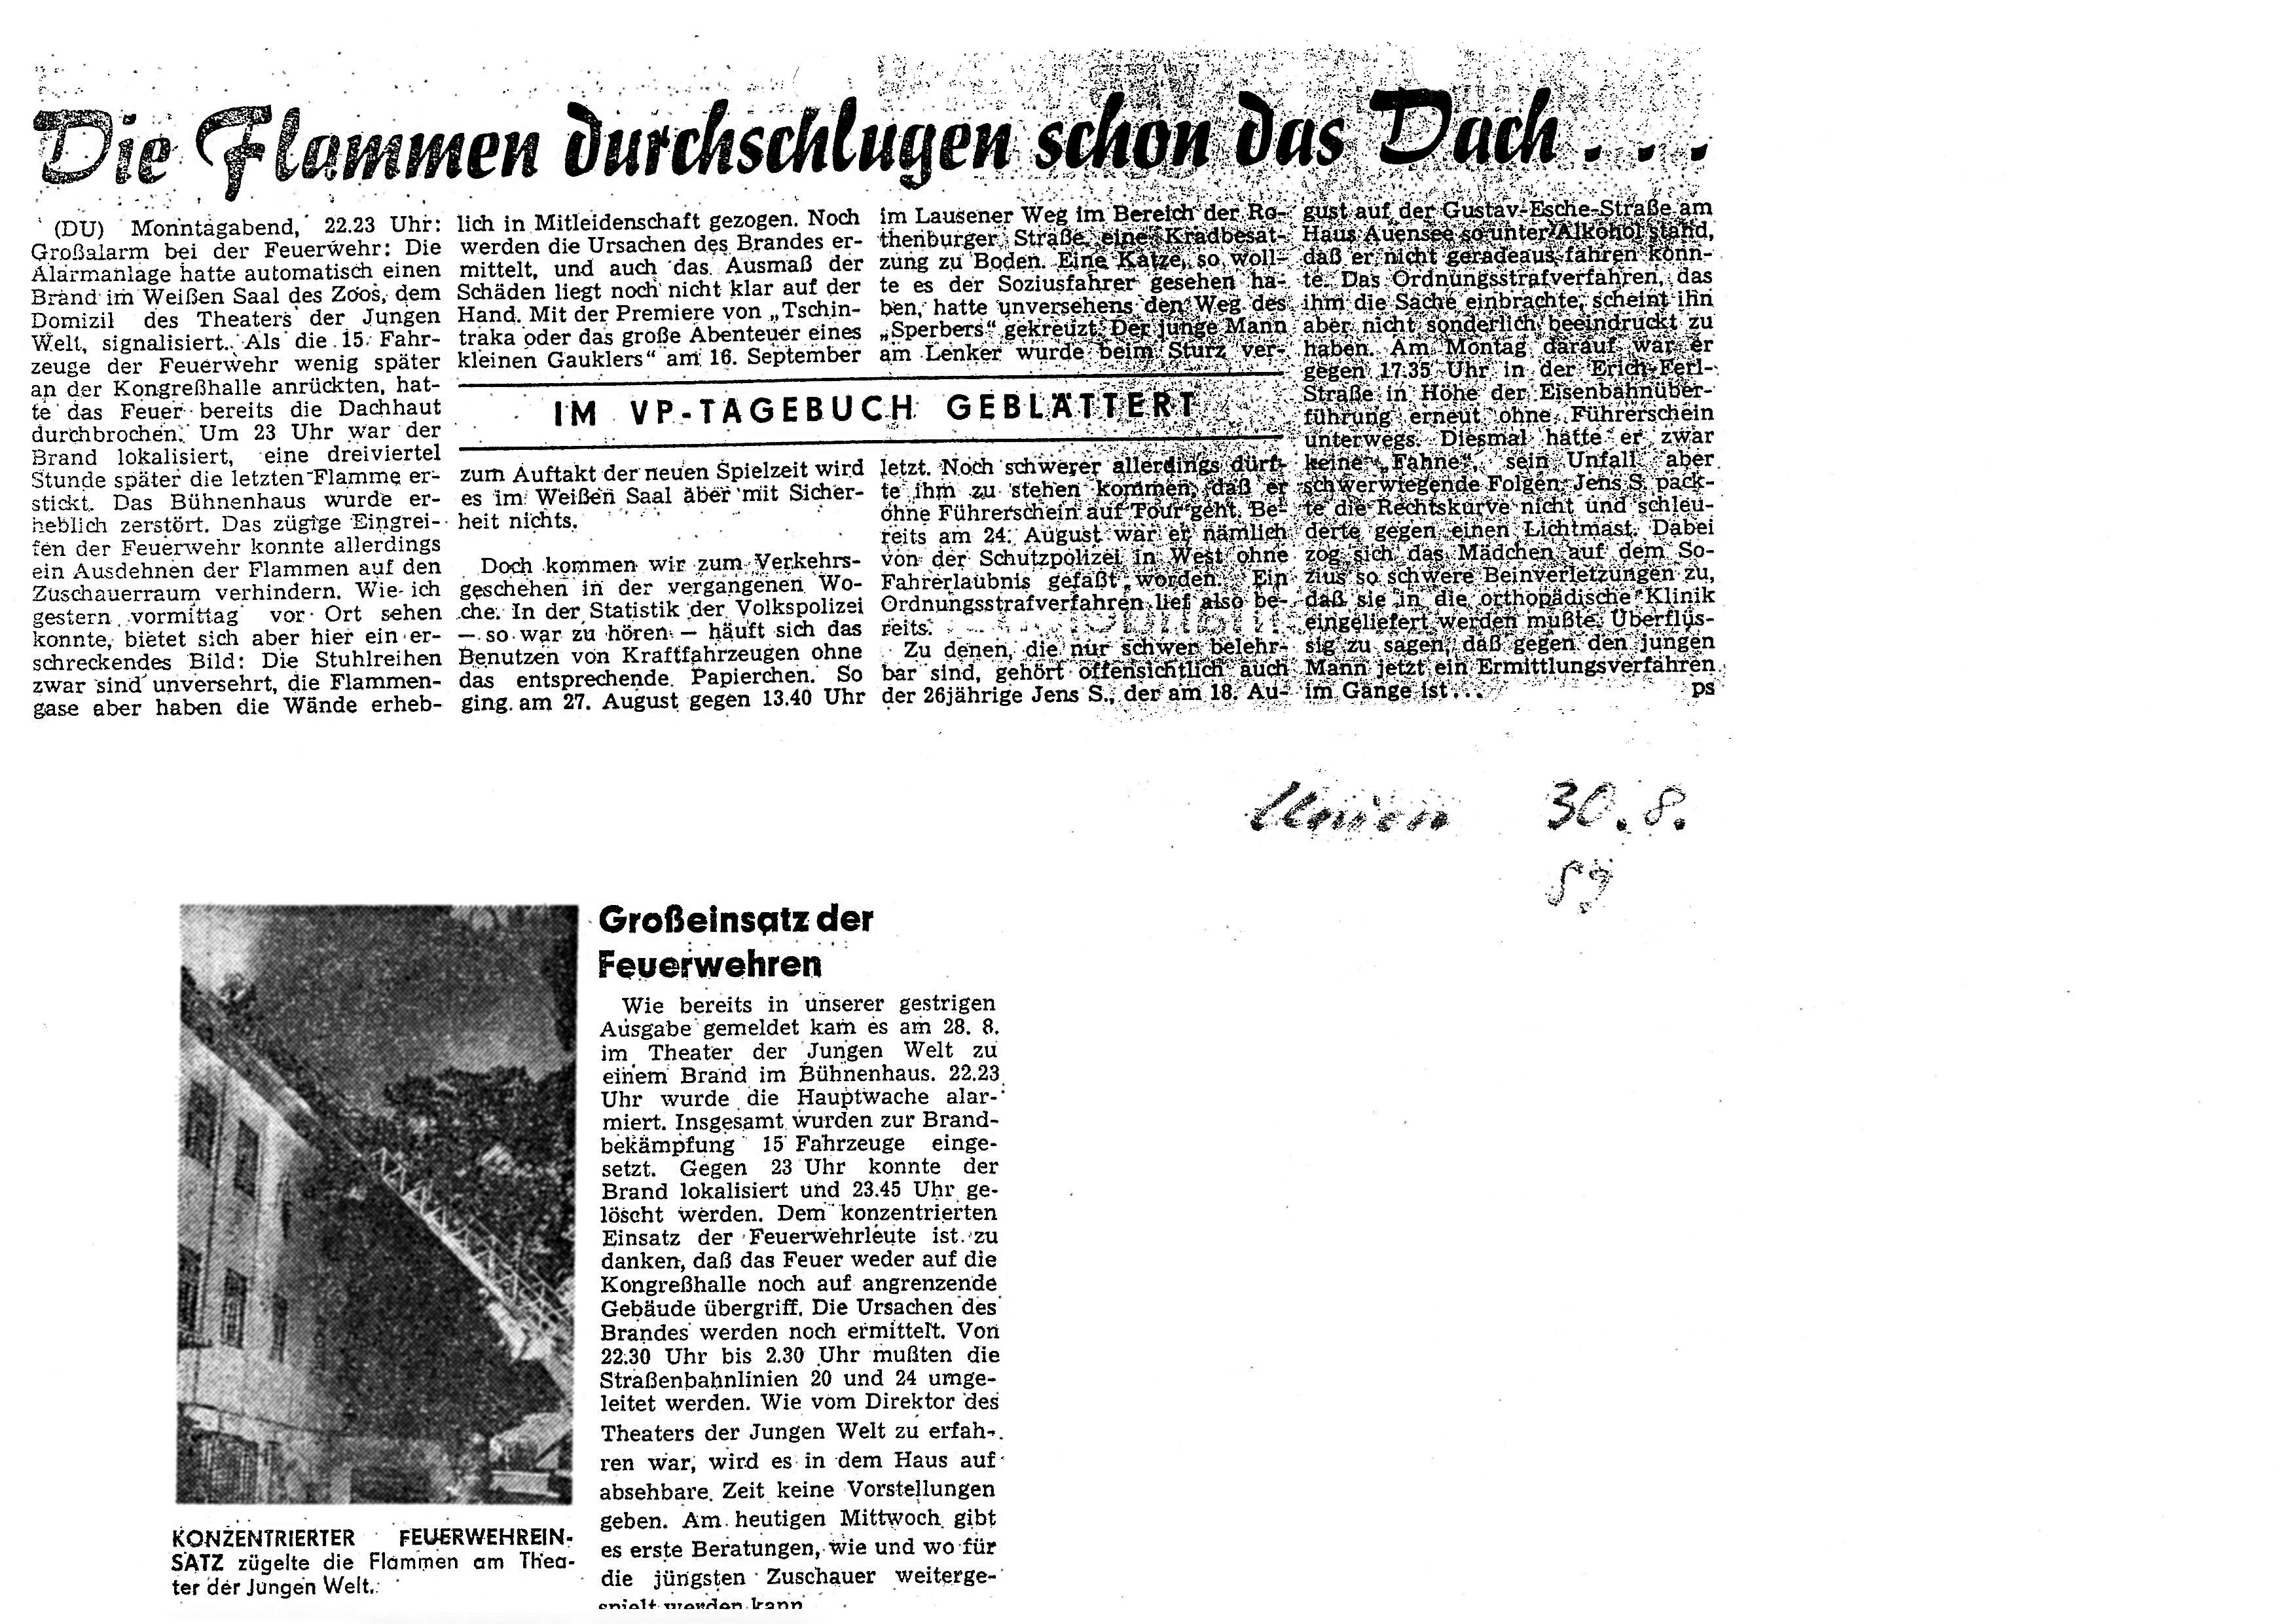 Artikel in der Leipziger Volkszeitung, 1989